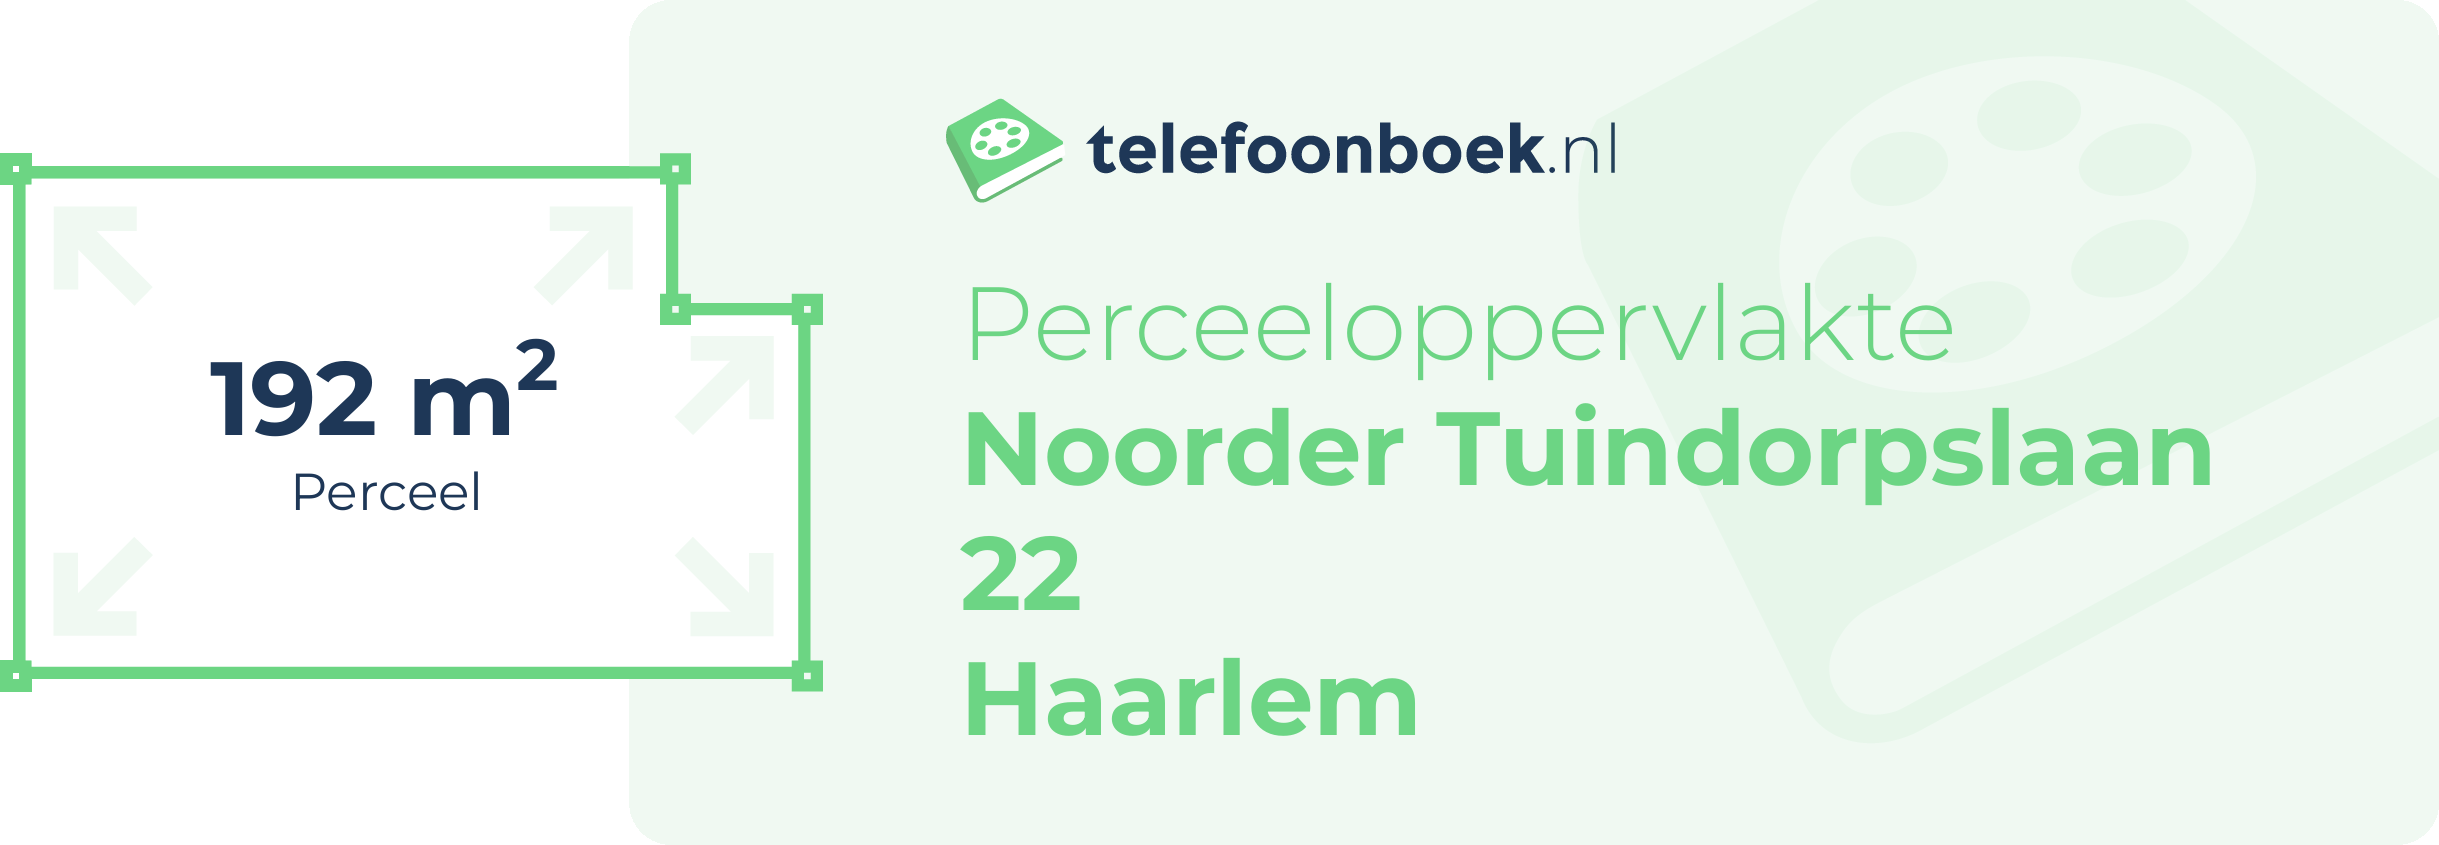 Perceeloppervlakte Noorder Tuindorpslaan 22 Haarlem